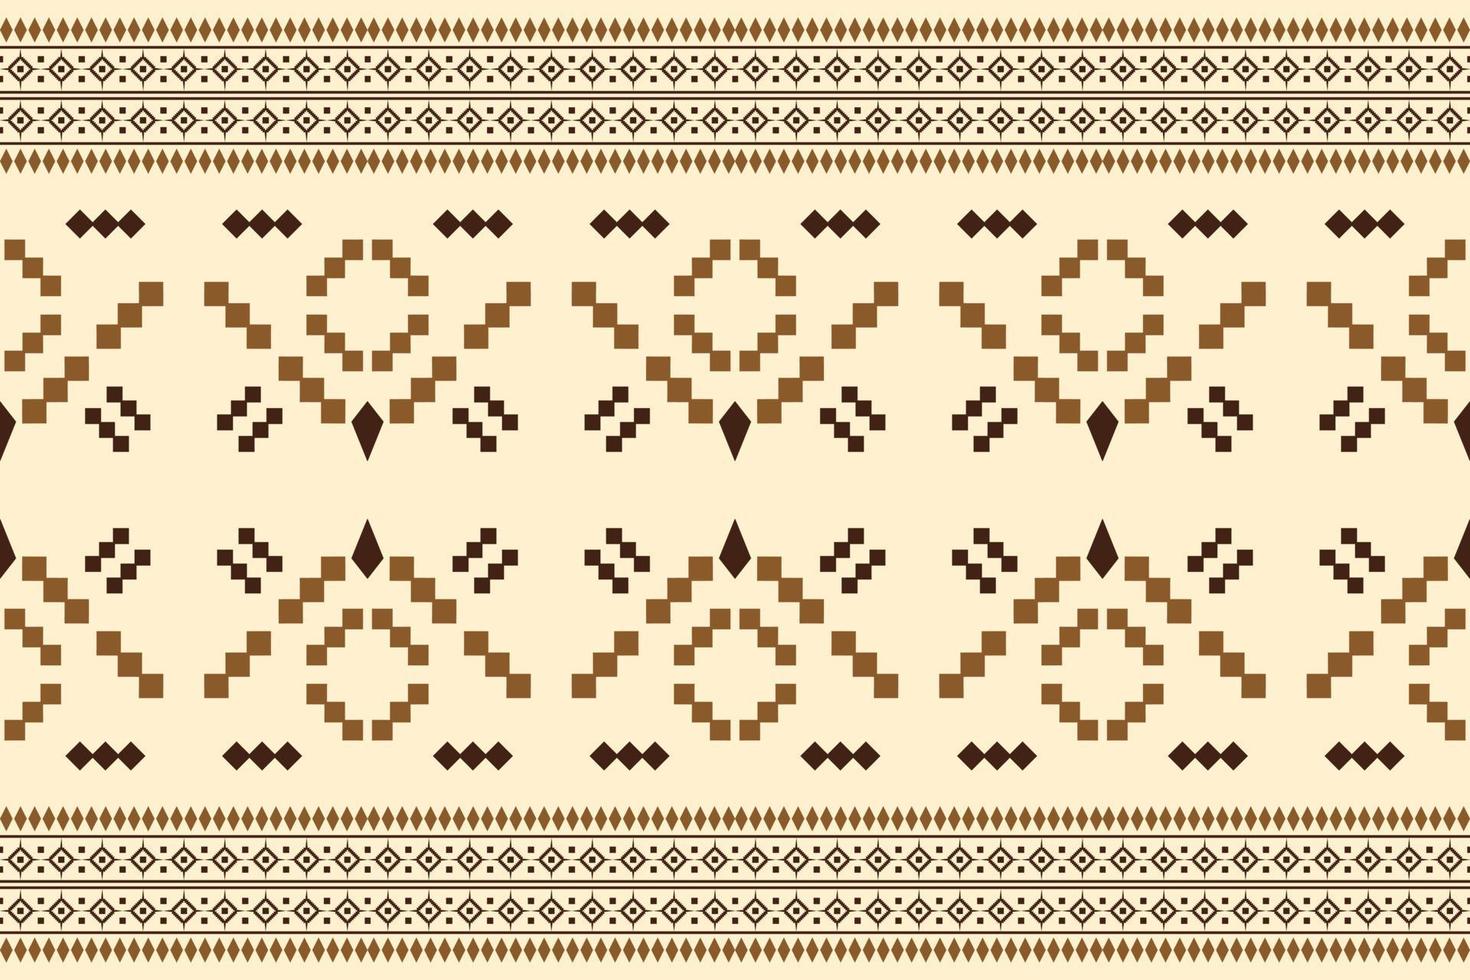 etnisch kleding stof patroon meetkundig stijl. sarong aztec etnisch oosters patroon traditioneel oranje achtergrond. abstract,vector,illustratie. gebruik voor textuur,kleding,verpakking,decoratie,tapijt. vector